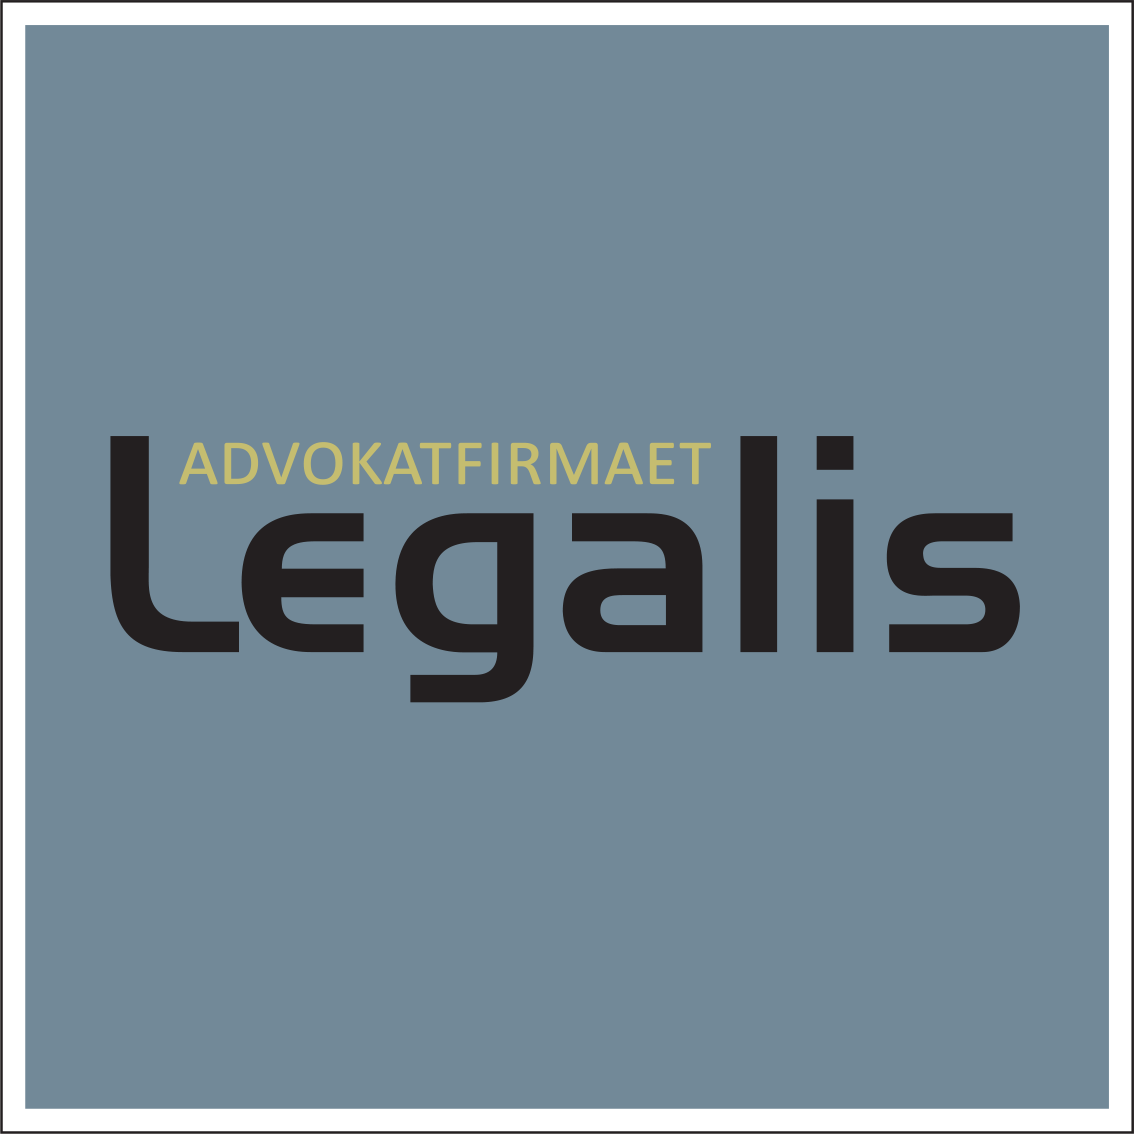 ME-foreningen har avtale med advokatfirmaet Legalis om 1 times gratis rådgiving for medlemmene.